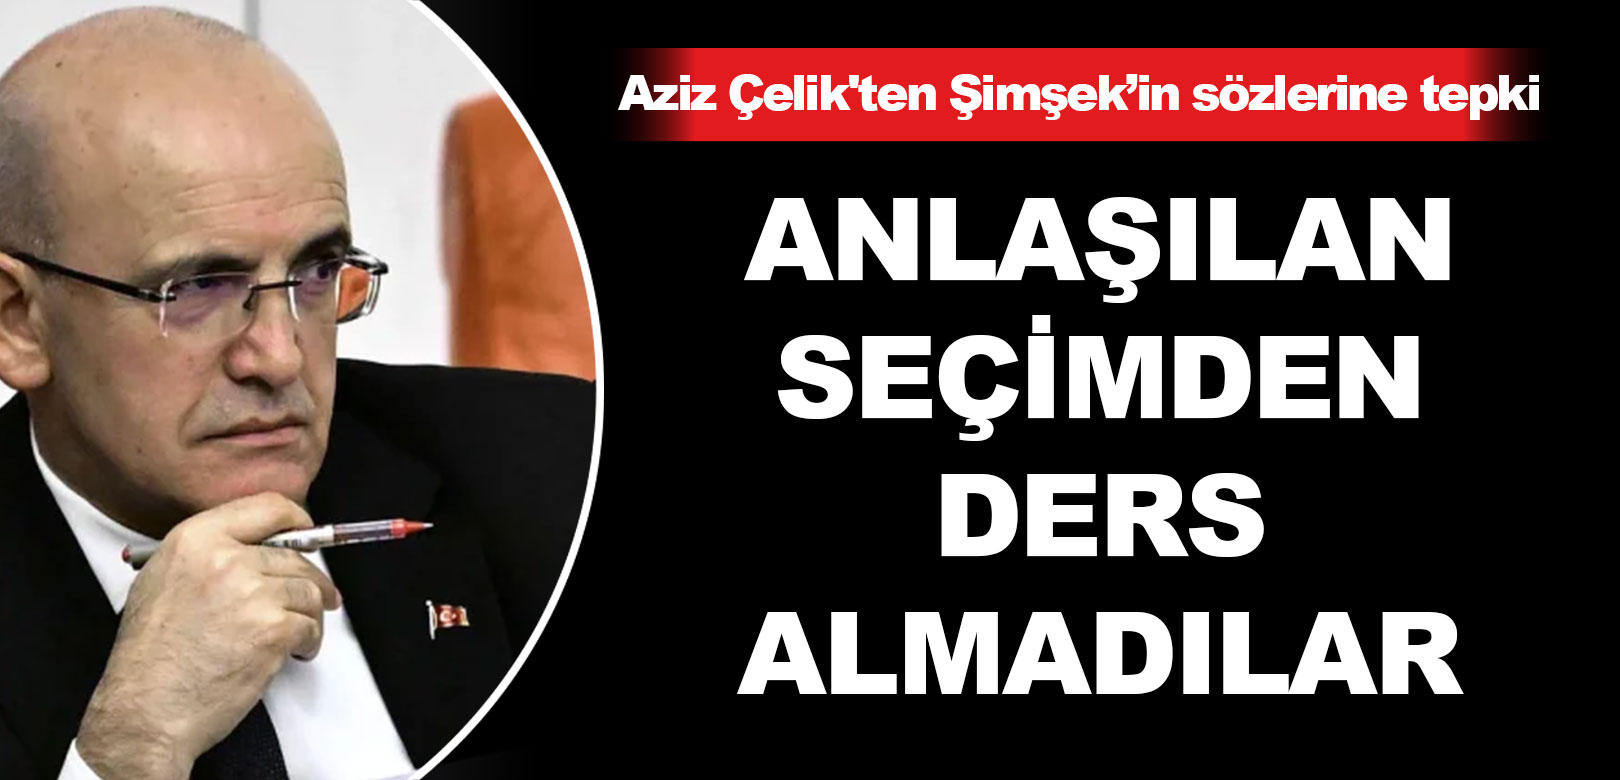 Bakan Şimşek'in ilk açıklamasına Prof. Dr. Aziz Çelik'ten tepki: Halkın ne dediğini anlamadılar